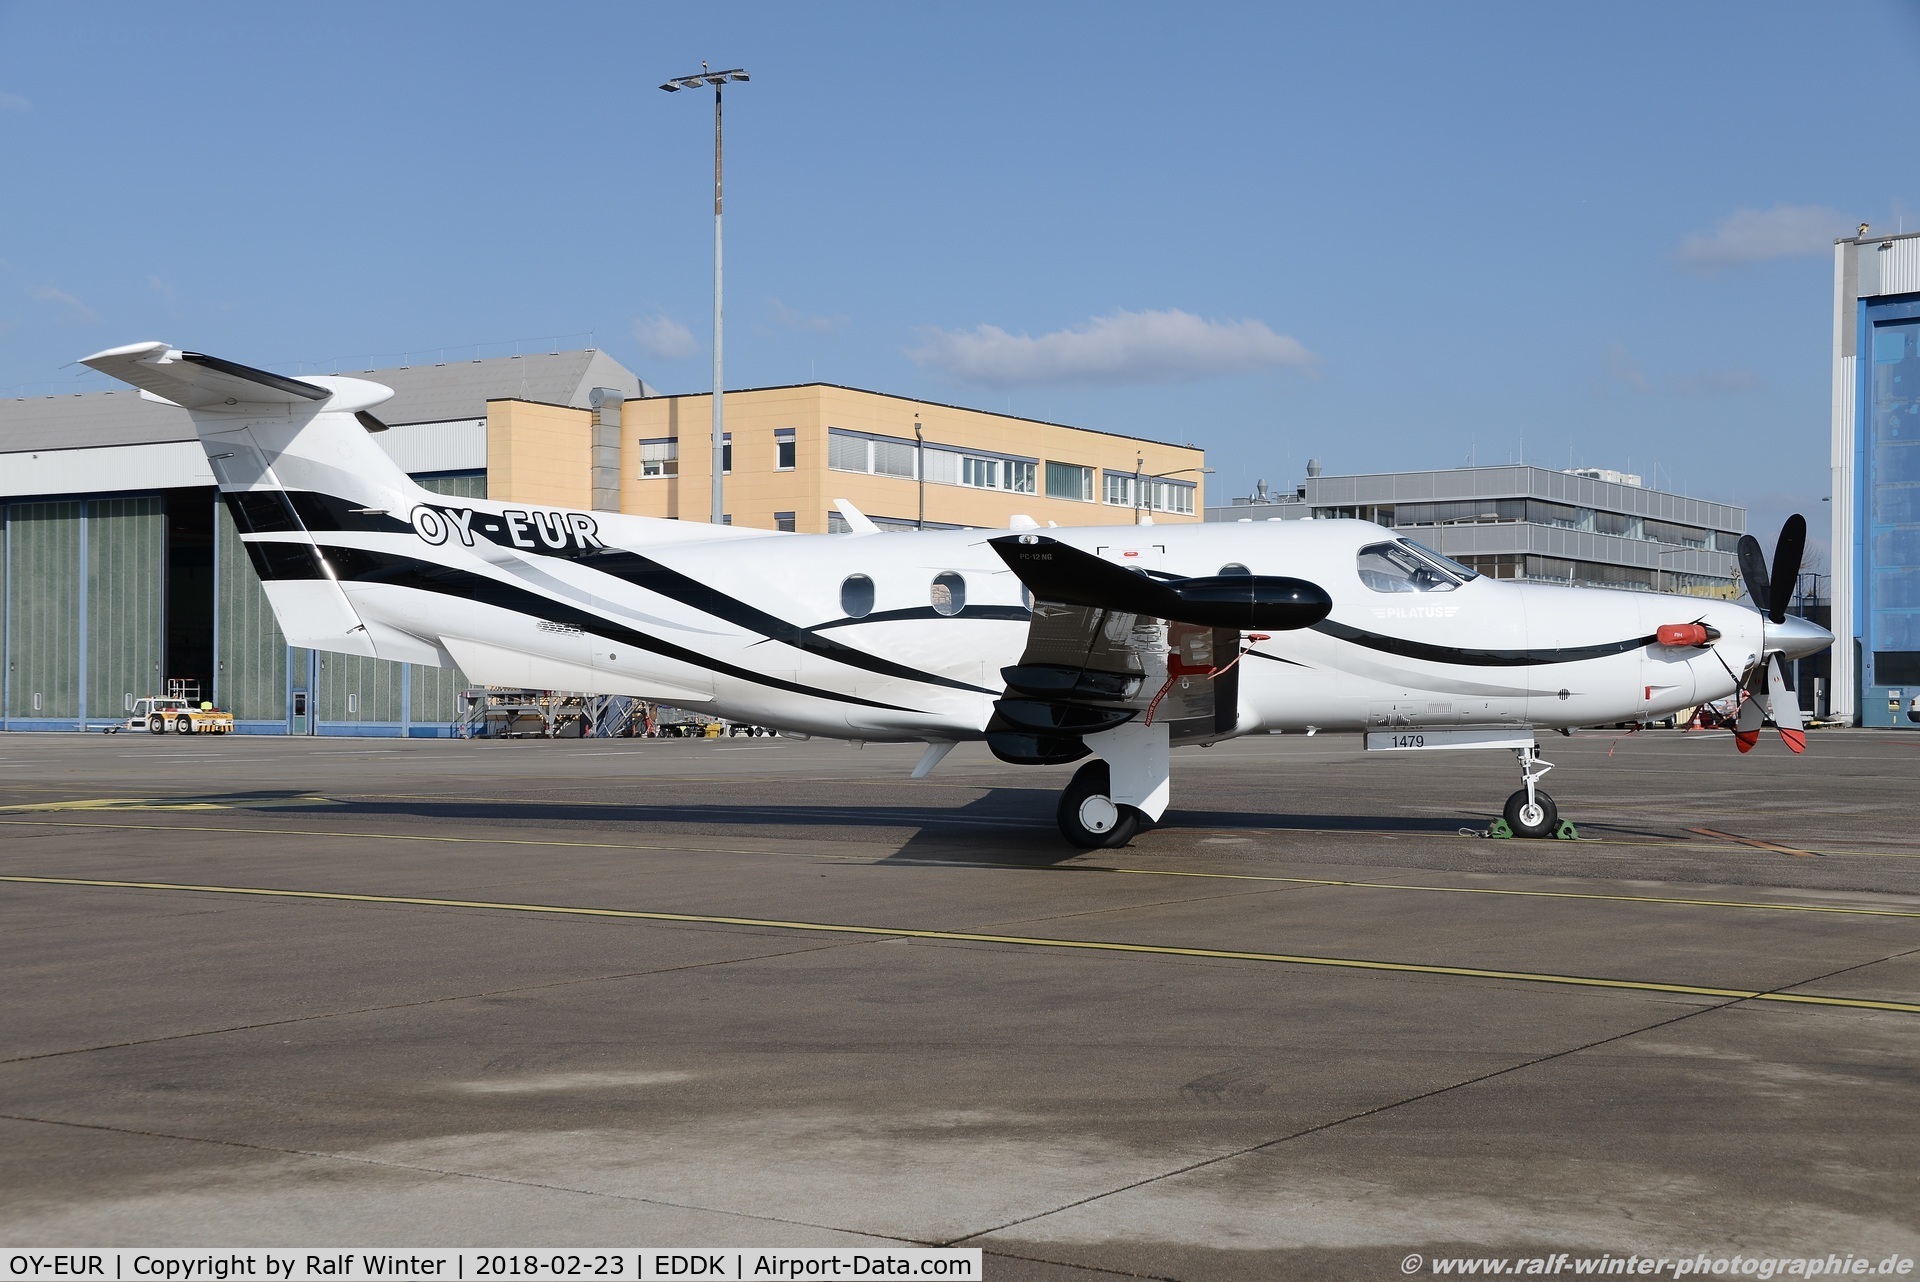 OY-EUR, 2014 Pilatus PC-12/47E C/N 1479, Pilatus PC-12-47E - KS JS-Eurowind Hobro - 1479 - OY-EUR - 22.02.2018 - CGN